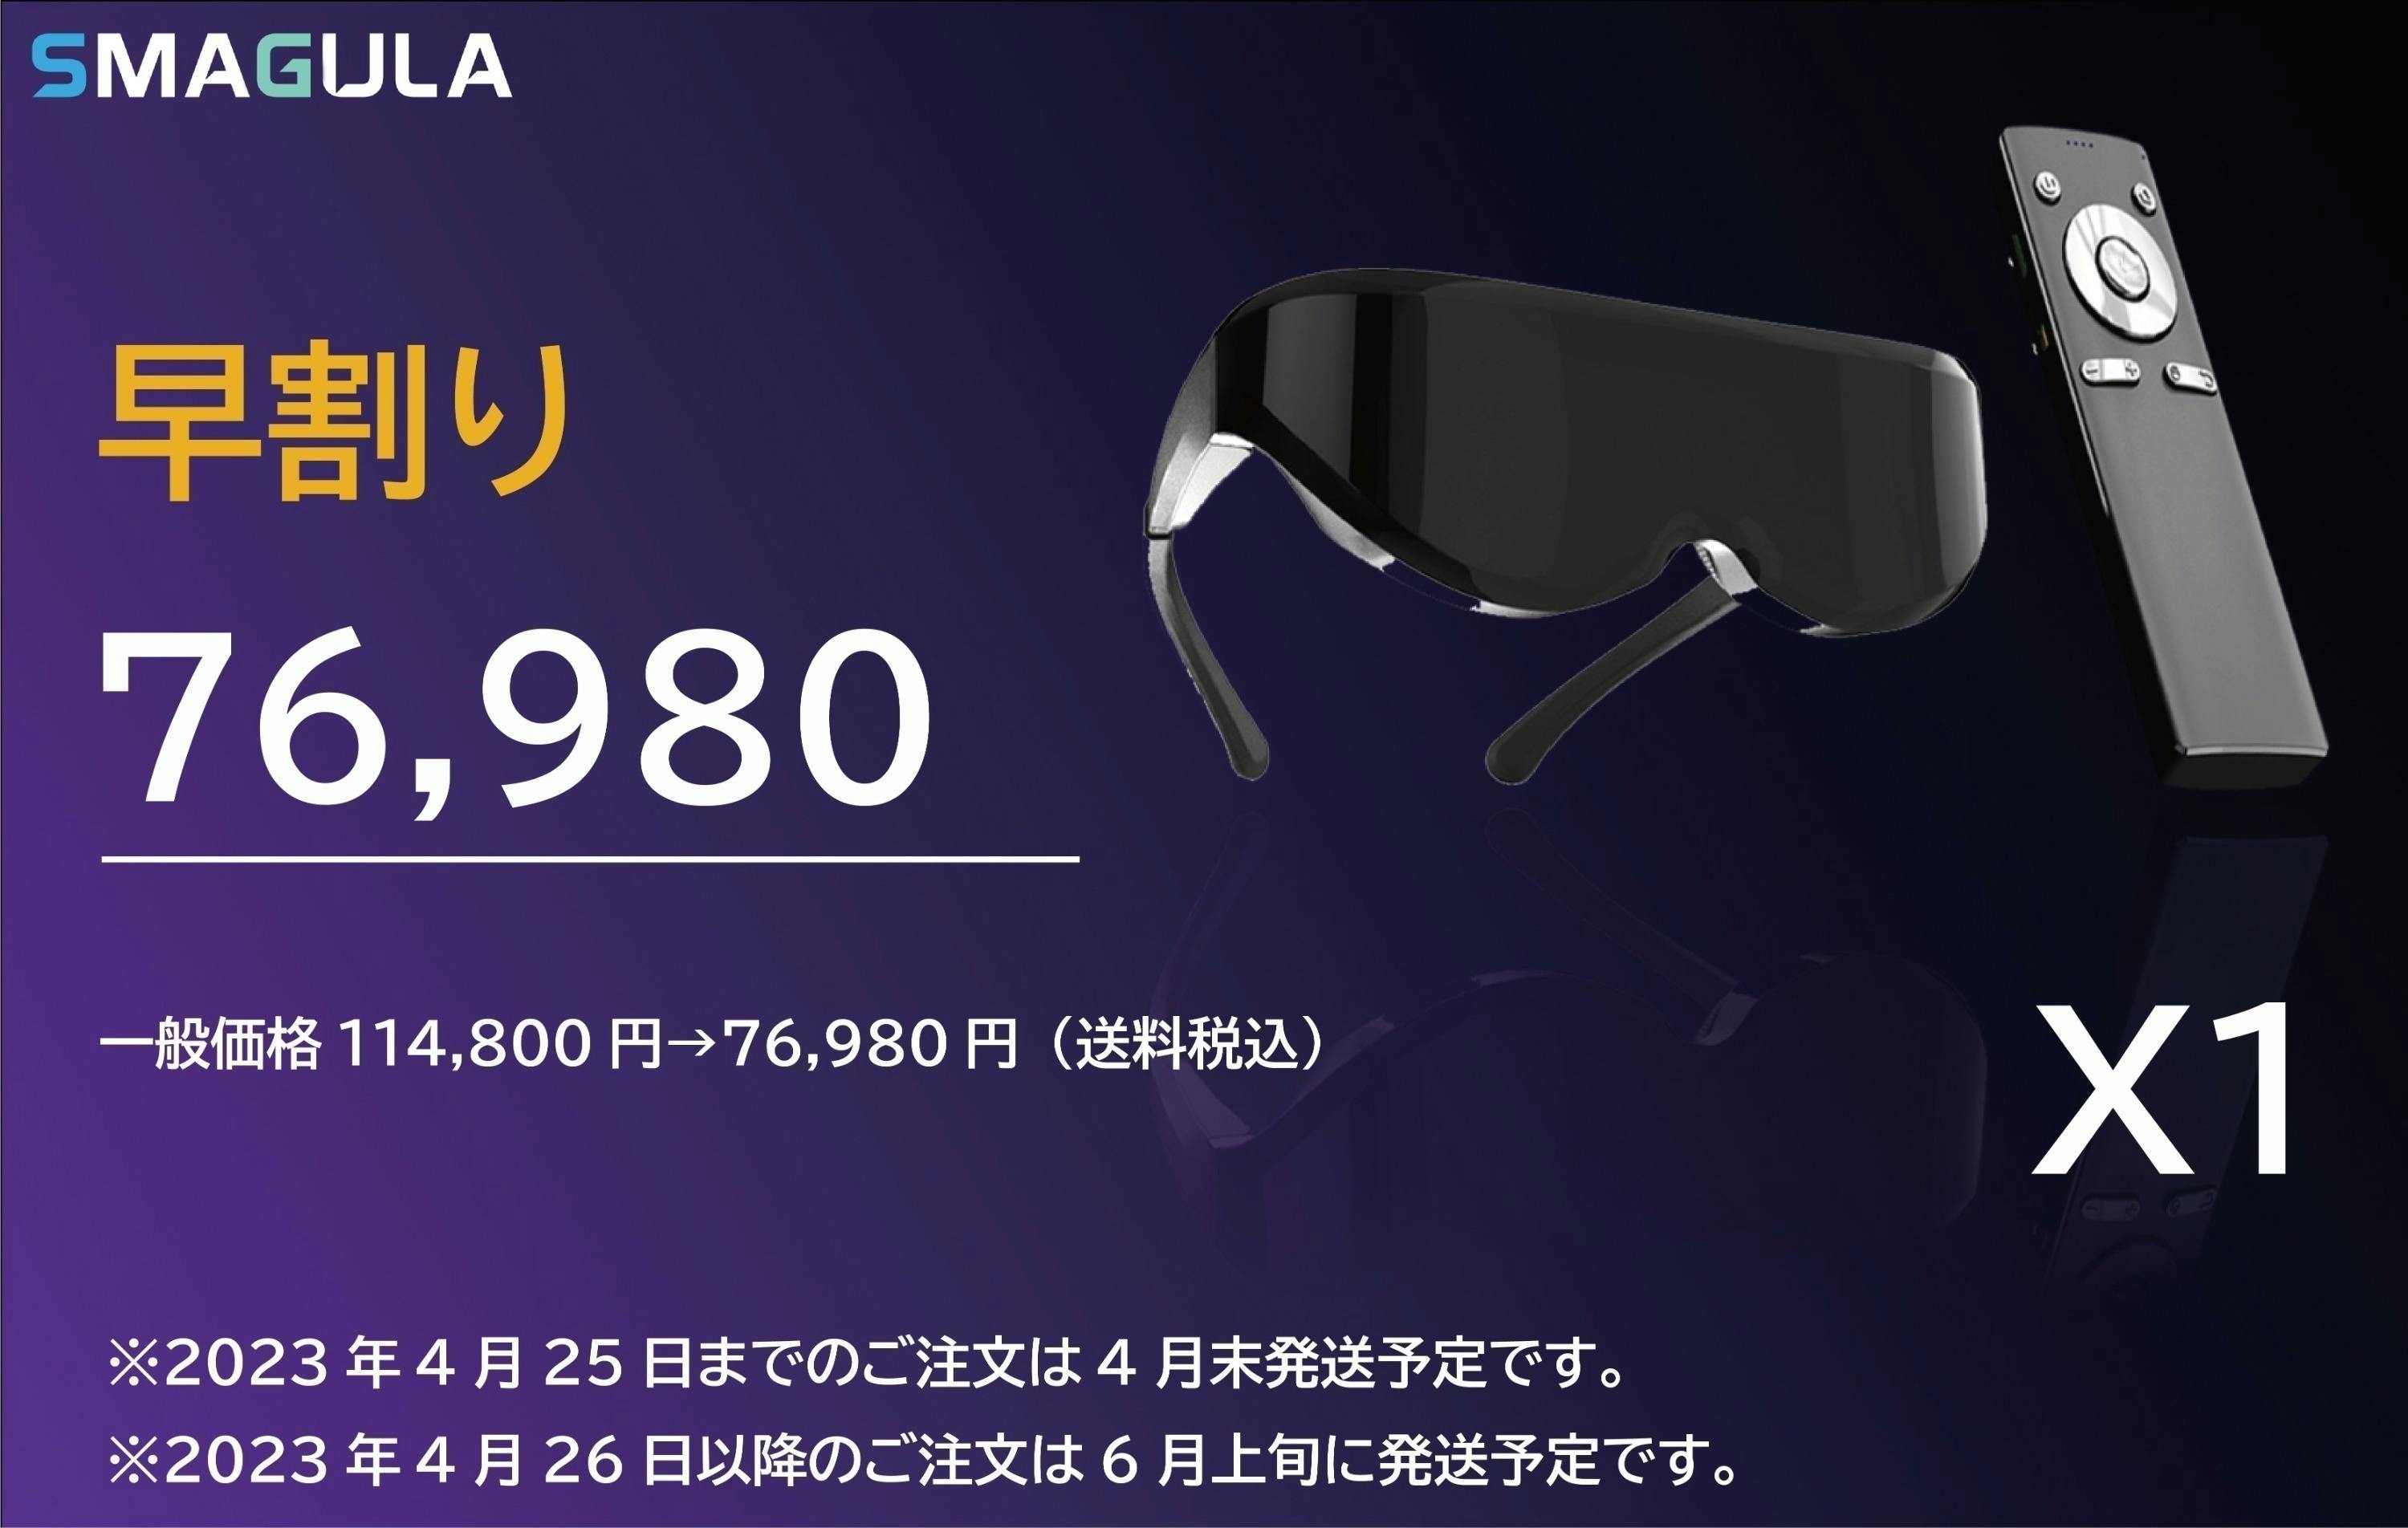 正式的 VR ヘッドマウントディスプレイ「SMAGULA」3Dスマート